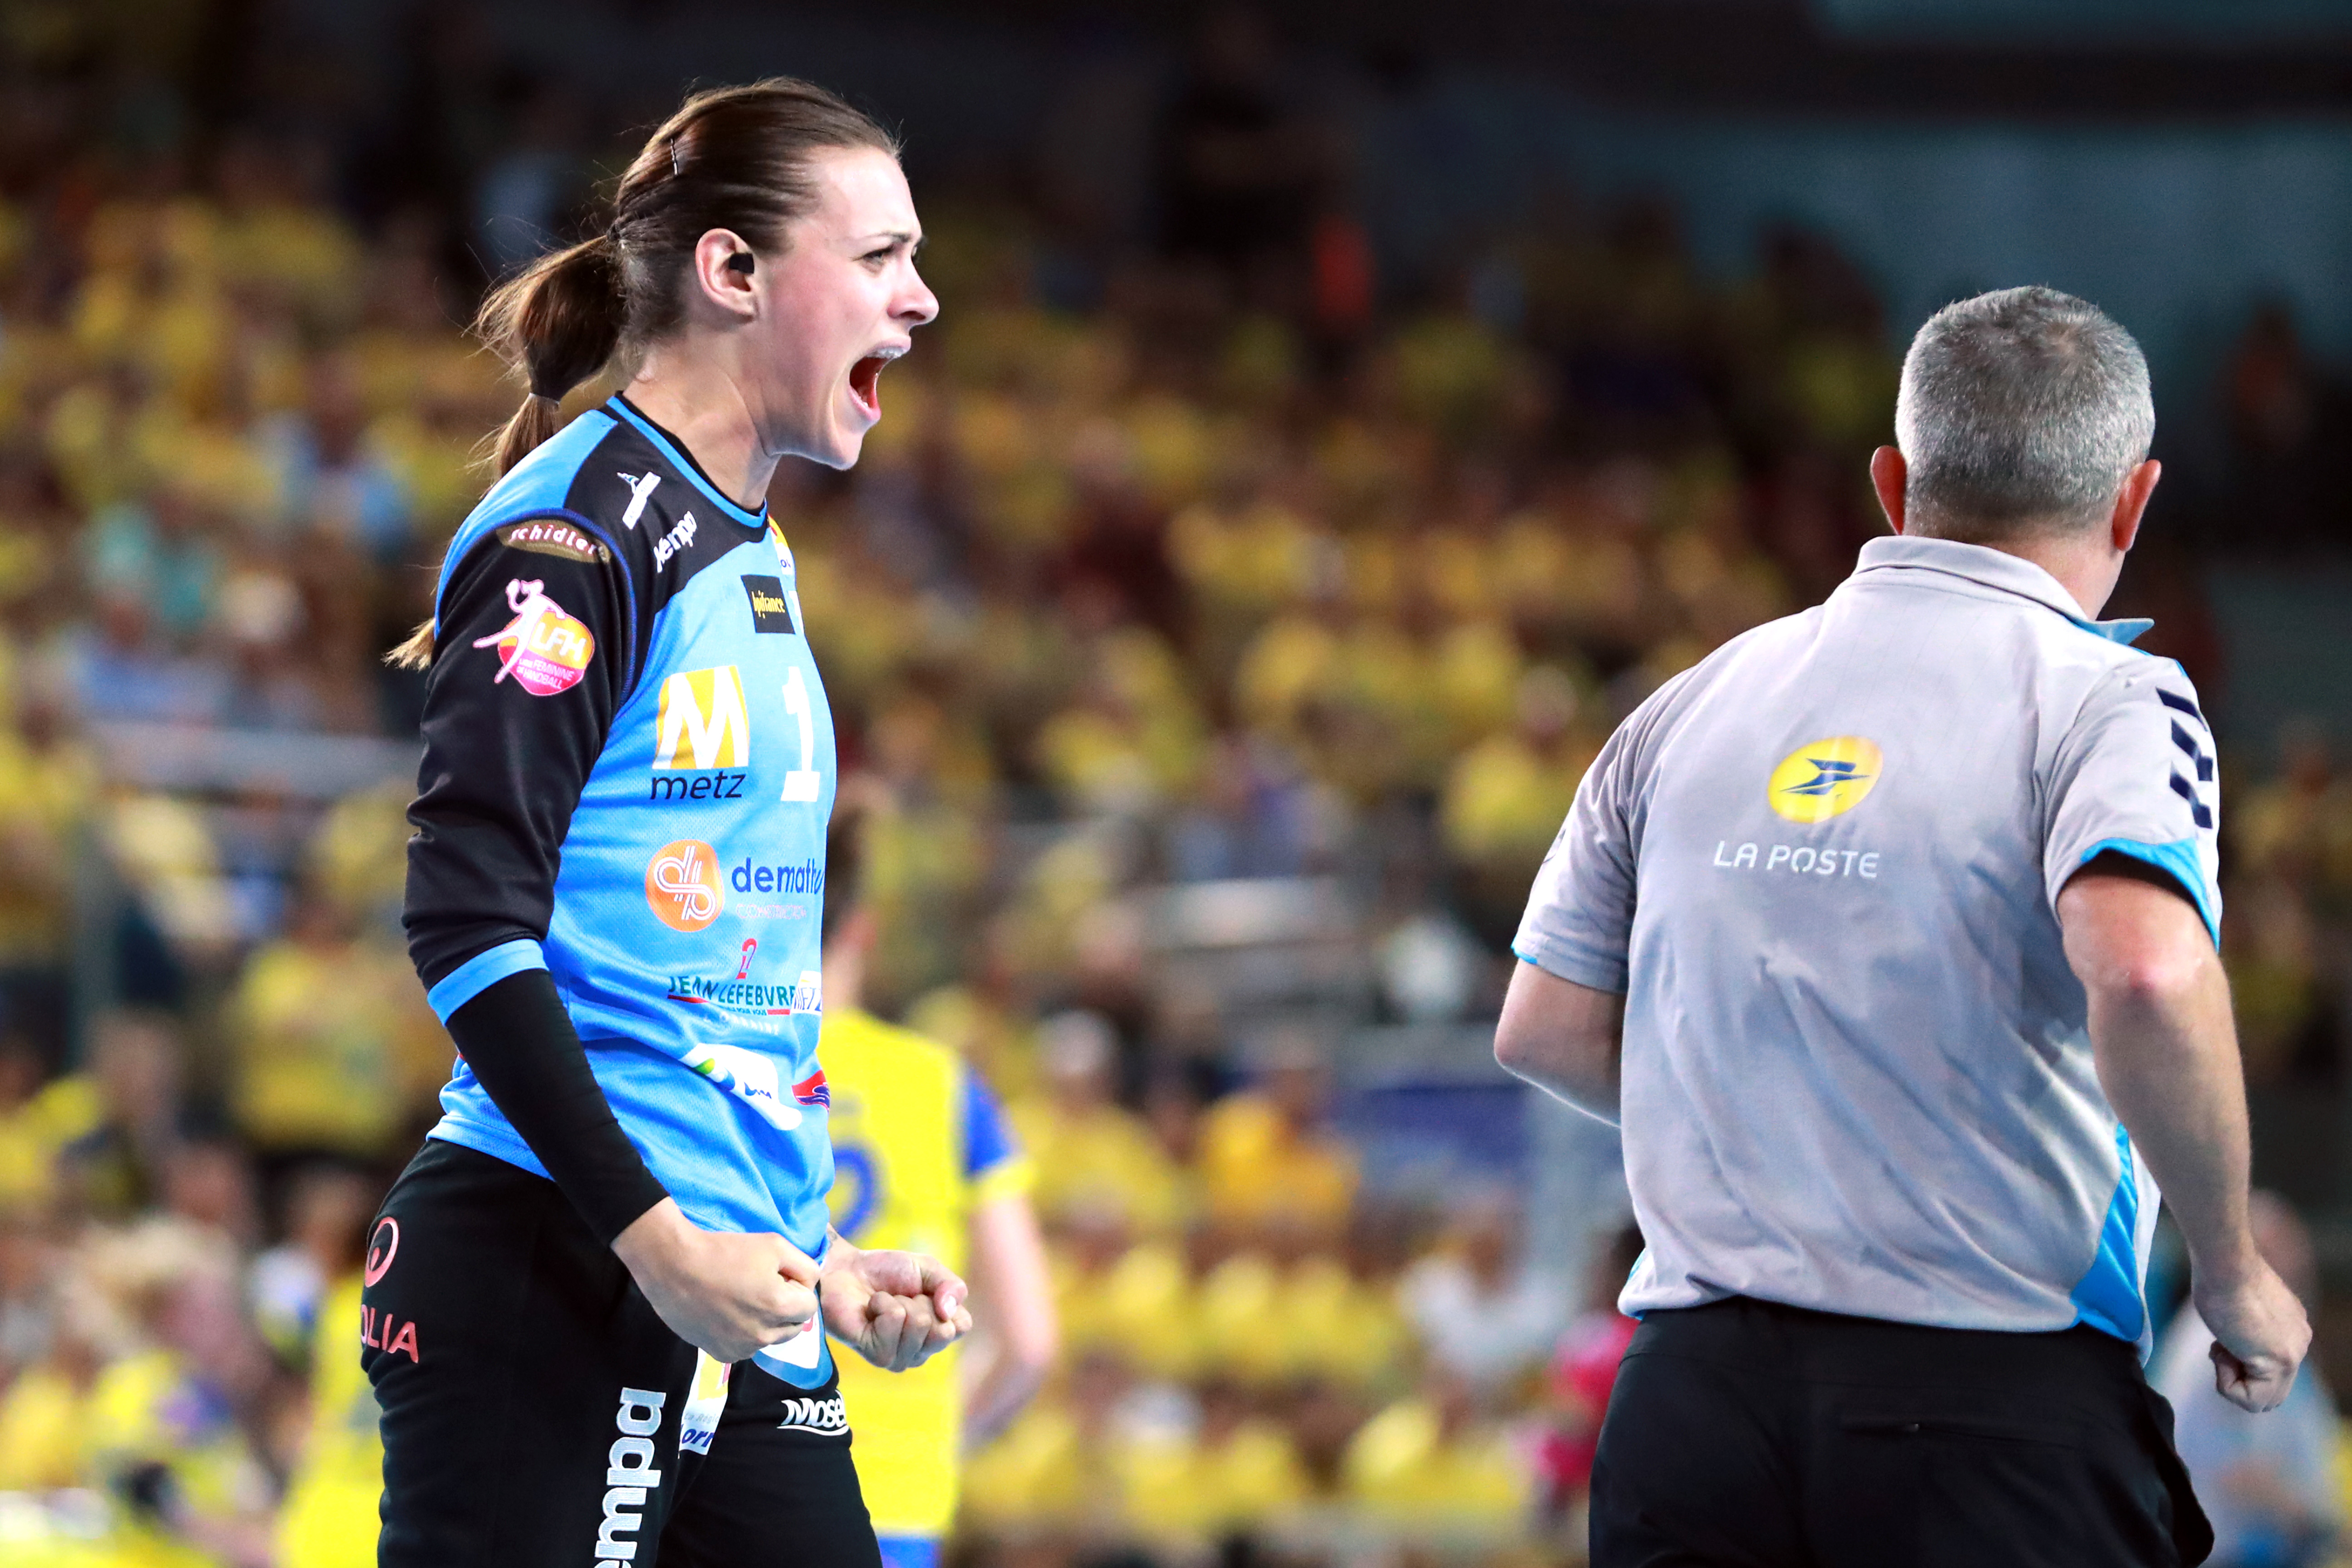 La rage de vaincre de Laura Glauser (Metz HB) lors de la finale des playoffs 2015-2016 face à Fleury, peu avant le titre